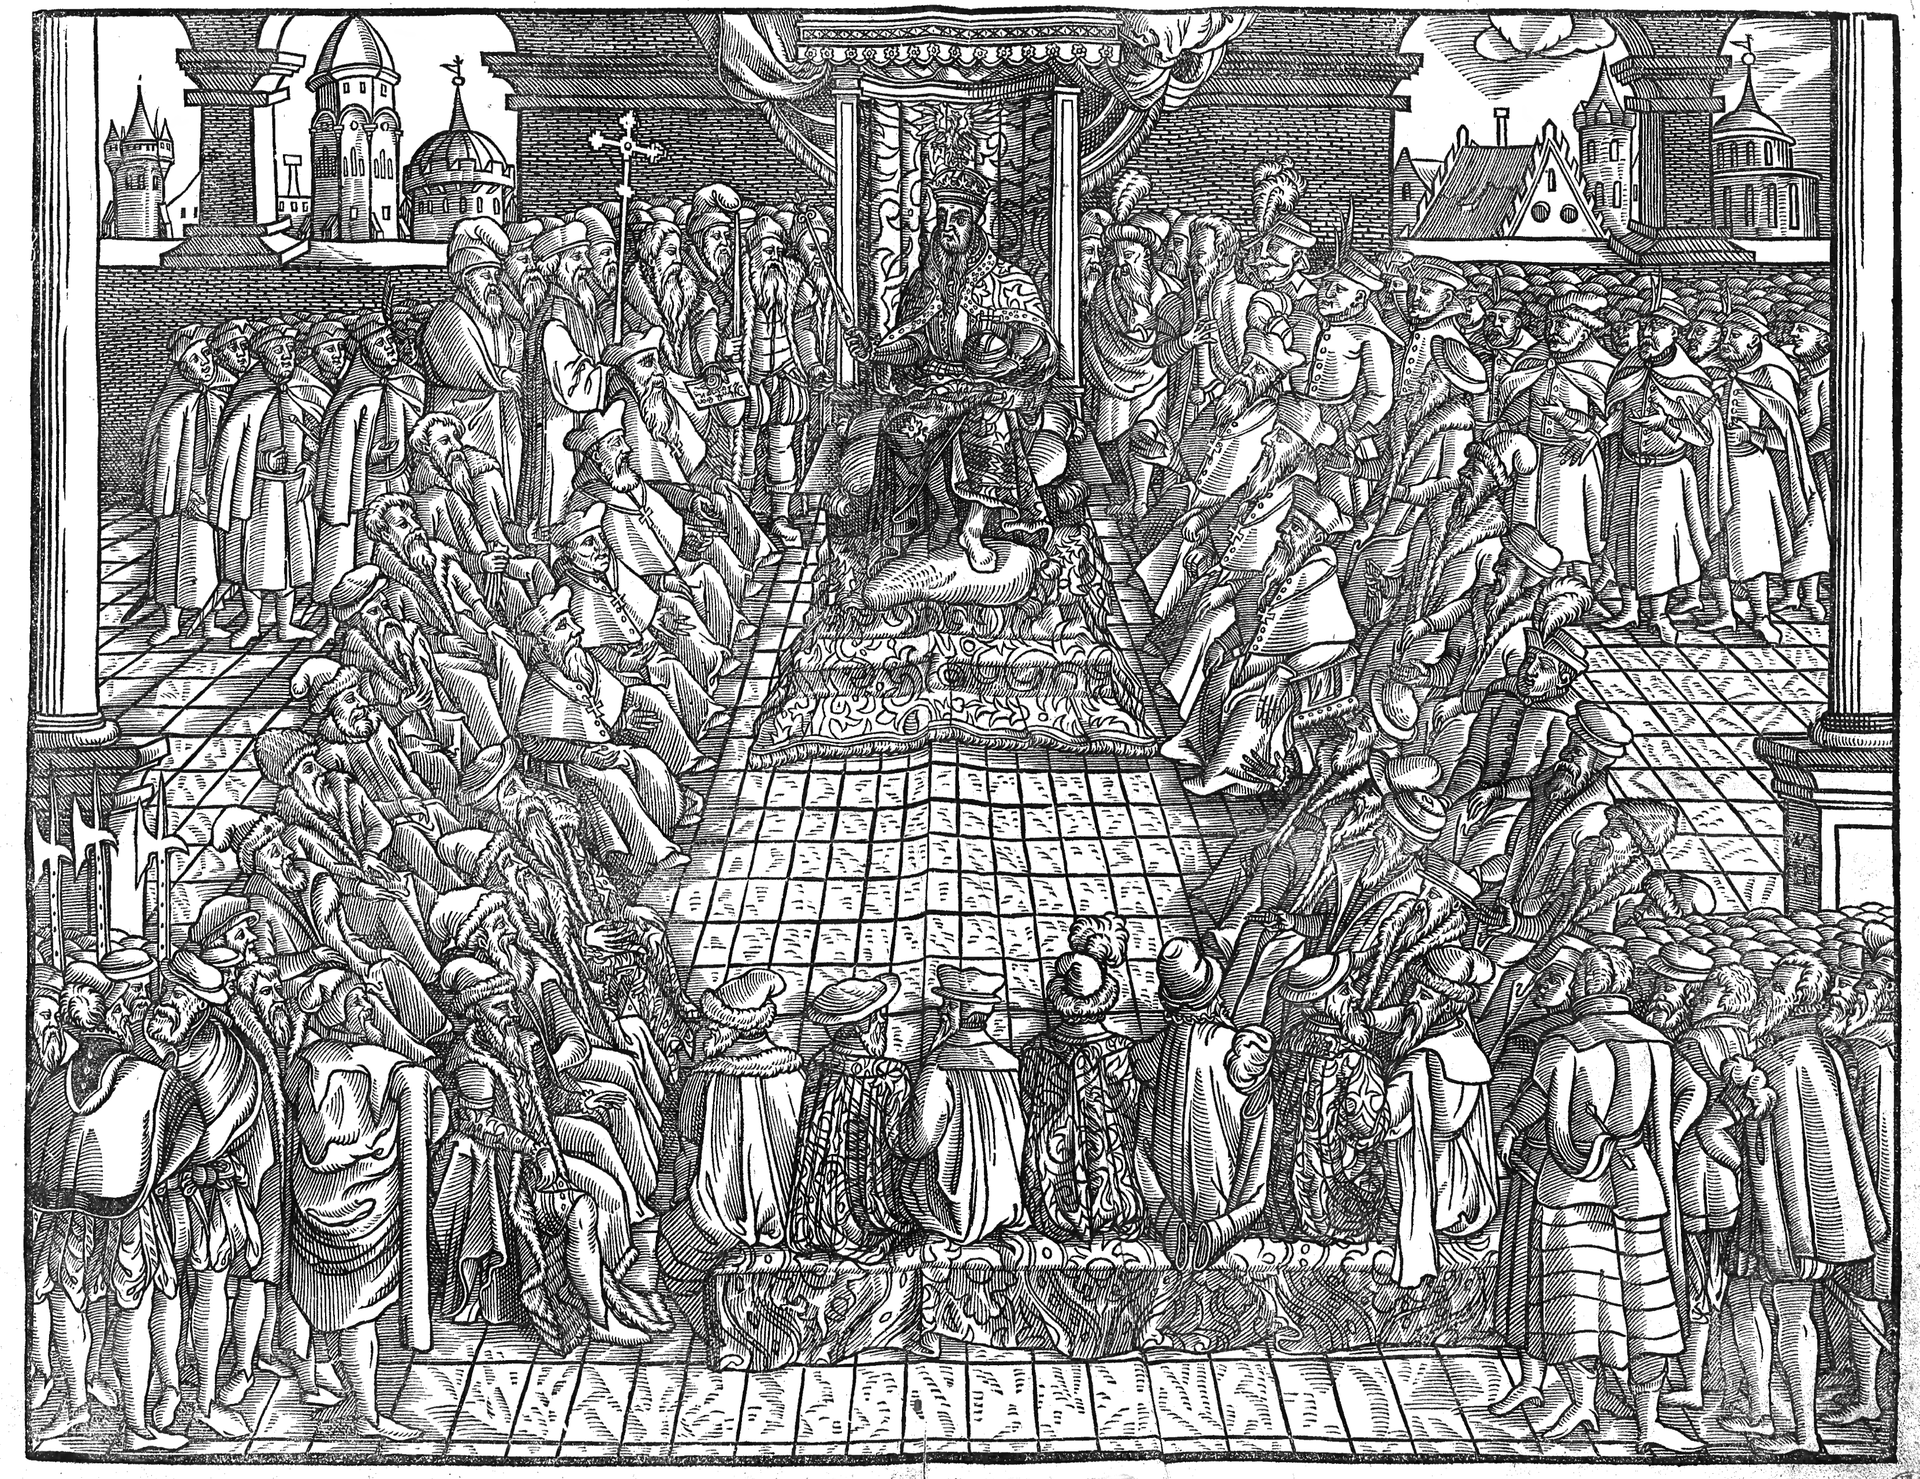 Szkic przedstawia króla siedzącego na wysokim tronie w wielkiej sali. Przed nim na krzesłach siedzą liczni przedstawiciele szlachty i duchowieństwa. Za nimi stoją liczni żołnierze i mieszczanie. Za oknami znajduje się miasto. 